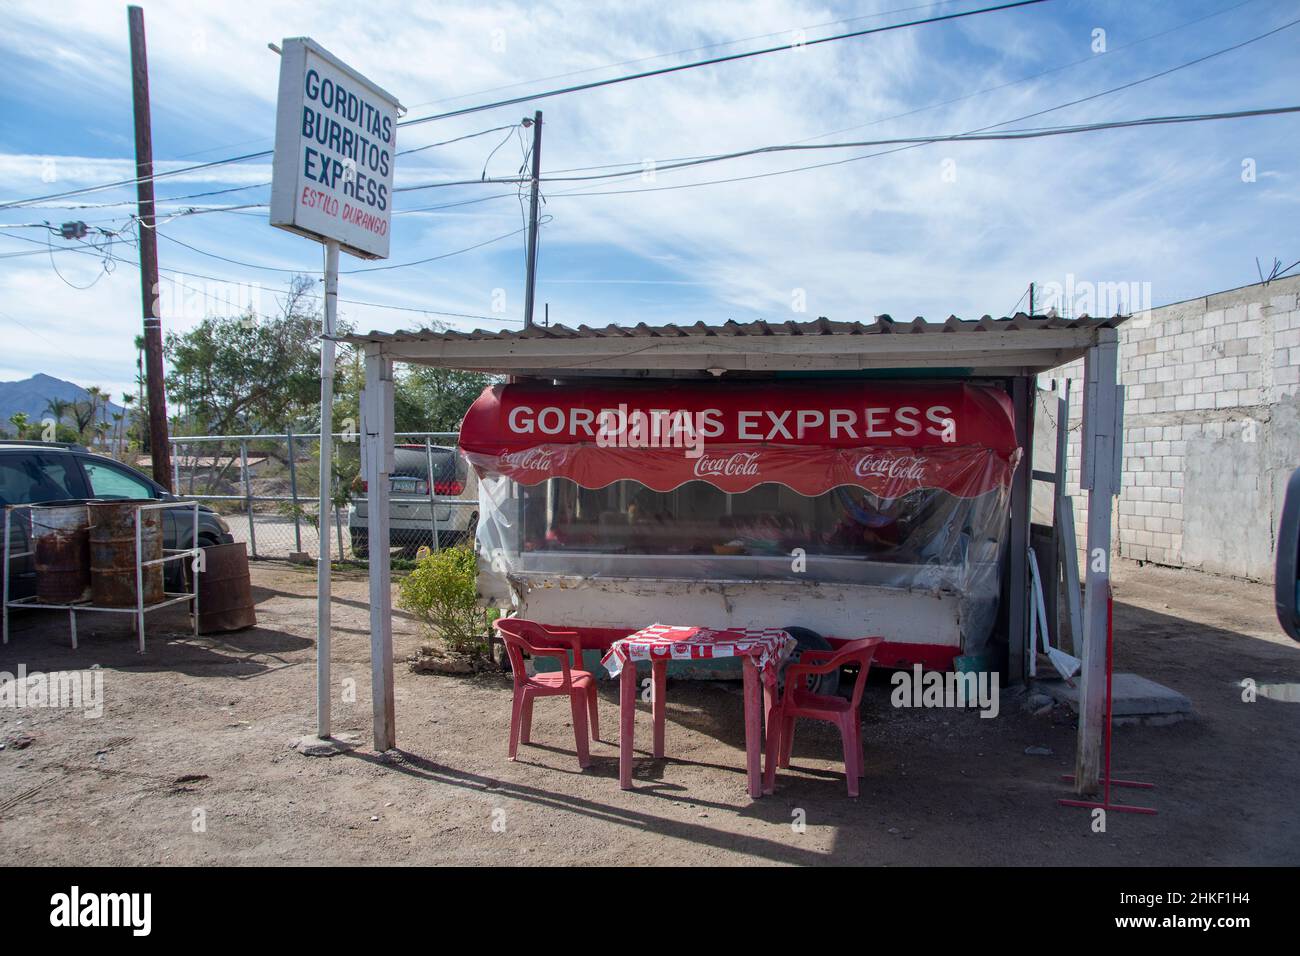 Ein Restaurant namens Gorditas Express in der Stadt Soytona, Baja California, Mexiko Stockfoto